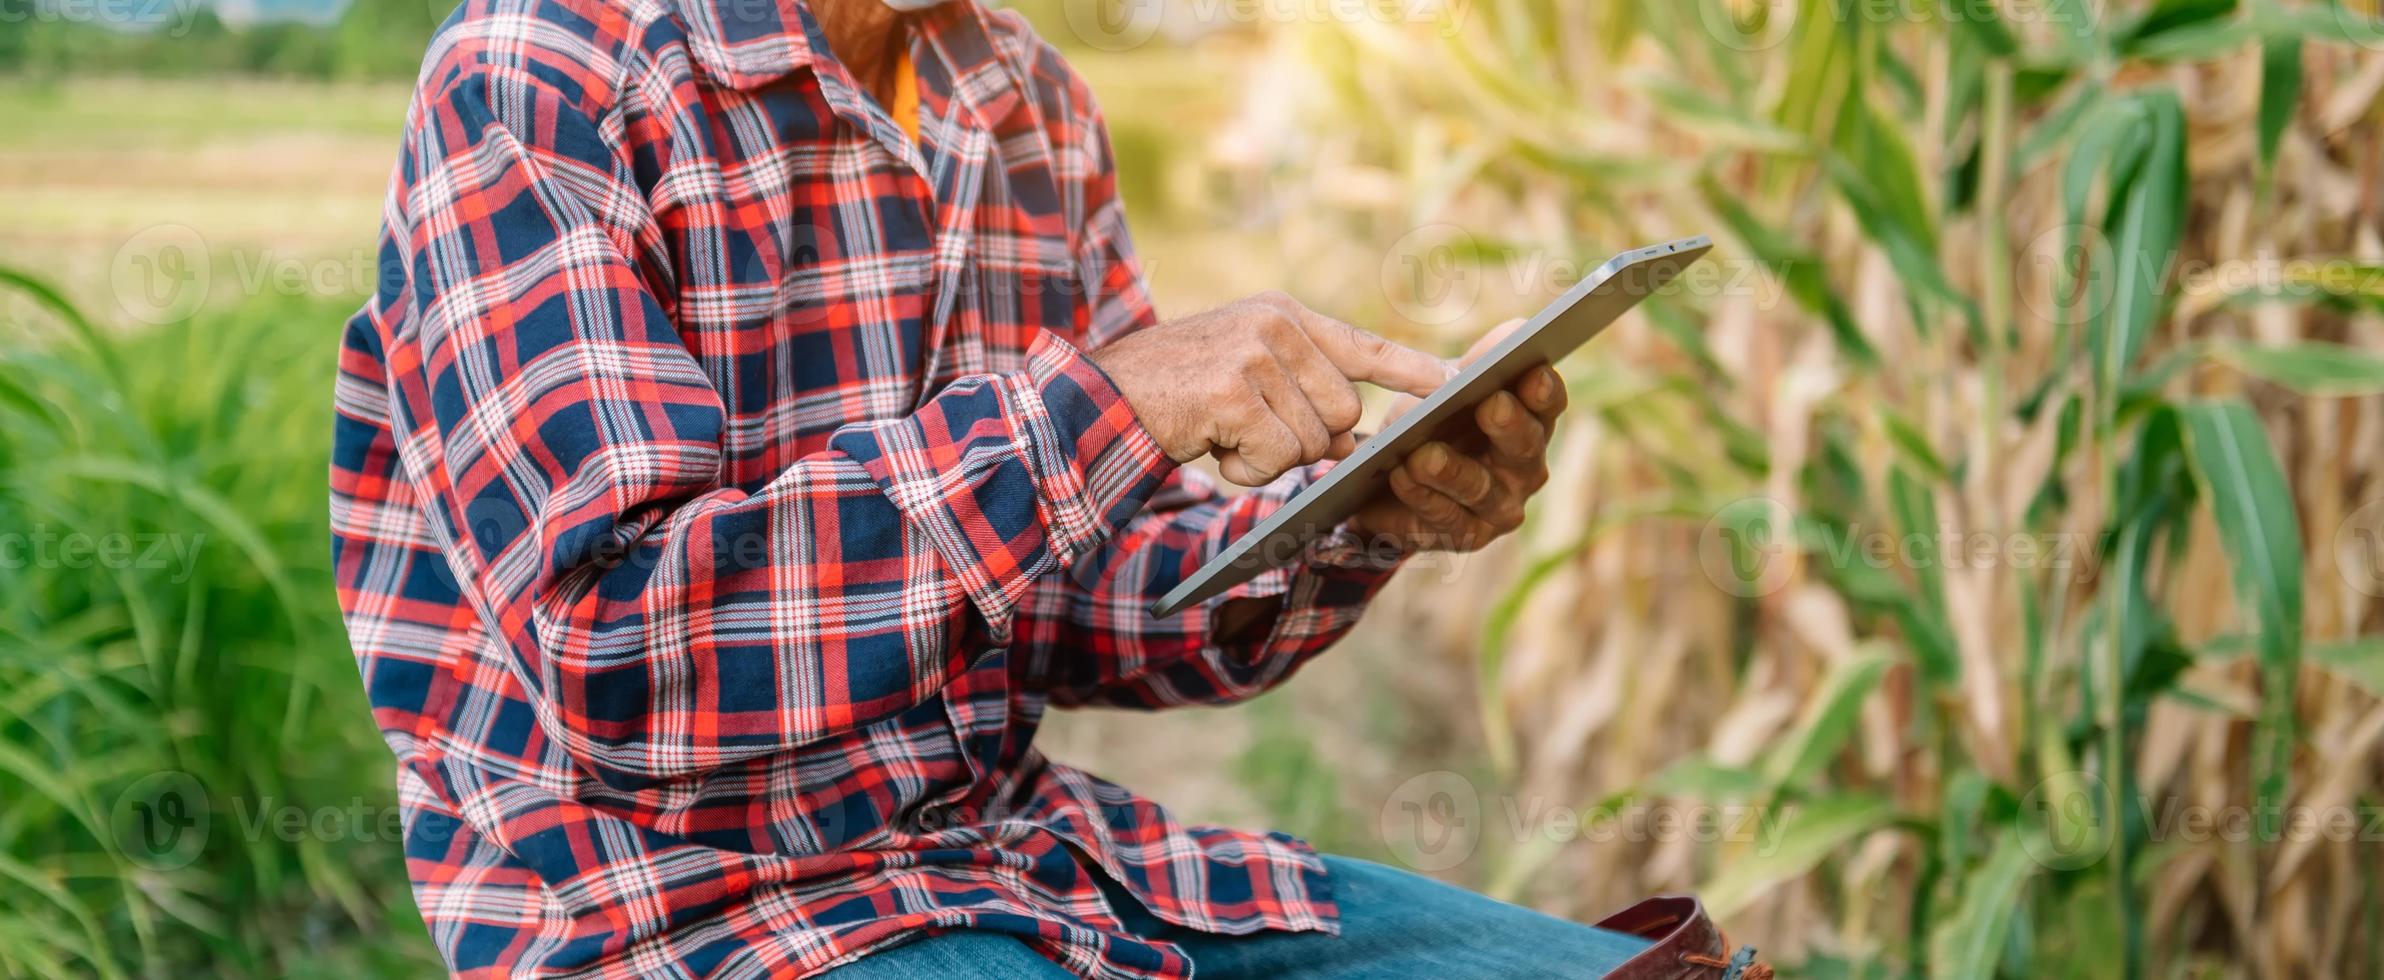 mujer agricultora que usa una tableta digital en el campo, aplicación de tecnología en la actividad de cultivo agrícola foto